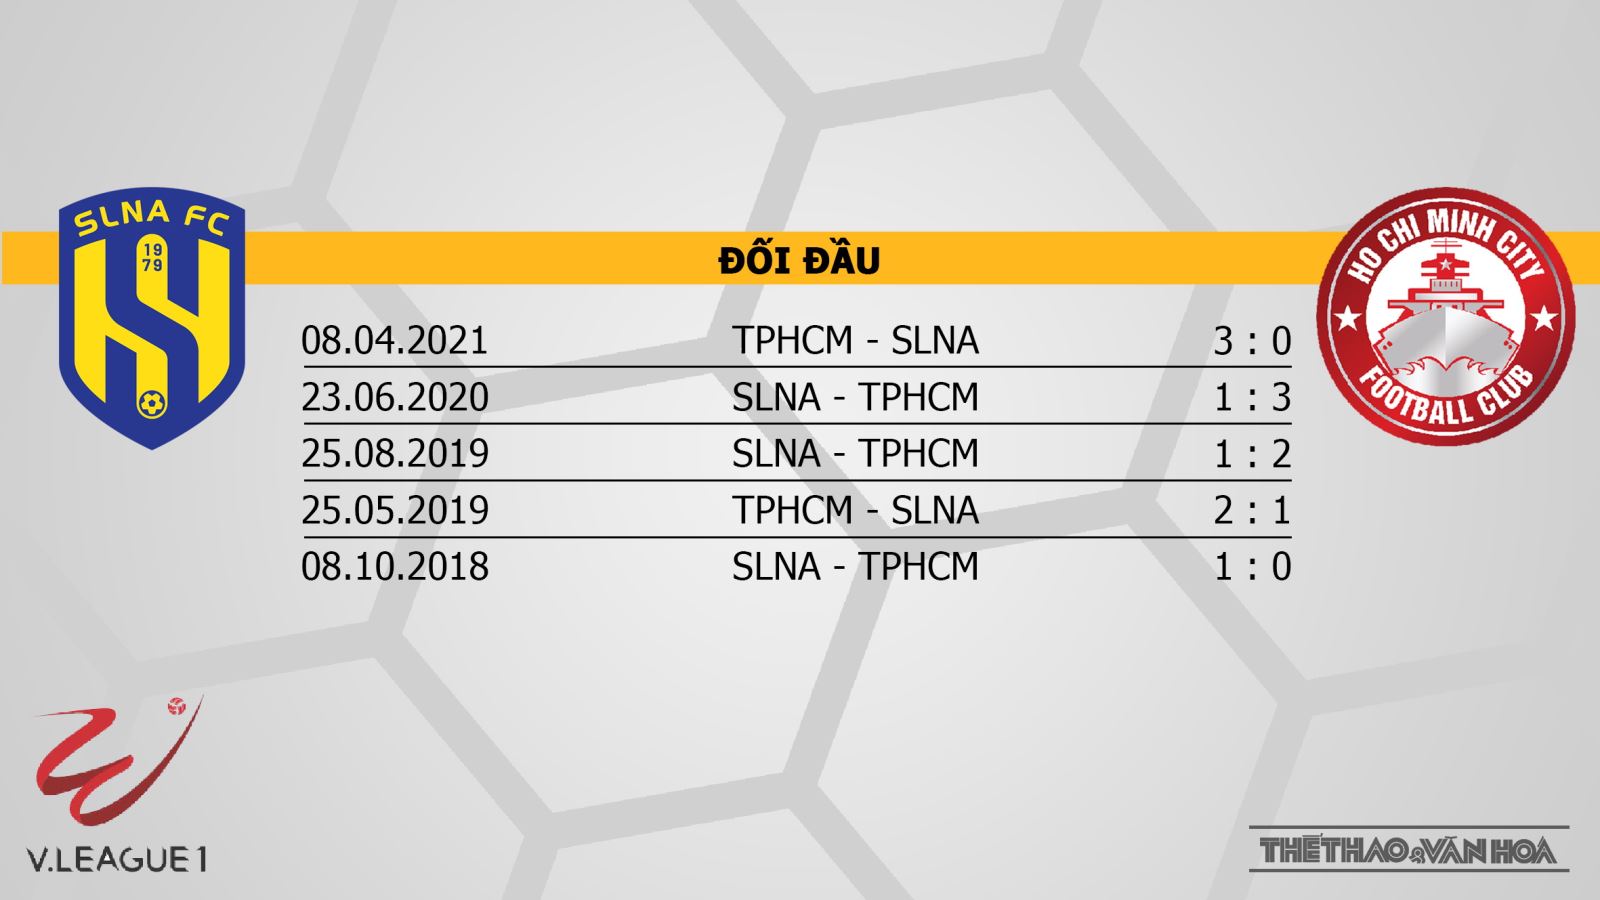 SLNA vs TPHCM, nhận định kết quả, nhận định bóng đá SLNA vs TPHCM, nhận định bóng đá, SLNA, TPHCM, keo nha cai, dự đoán bóng đá, V-League 2022, nhận định bóng đá, kèo bóng đá, kèo V-League 2022